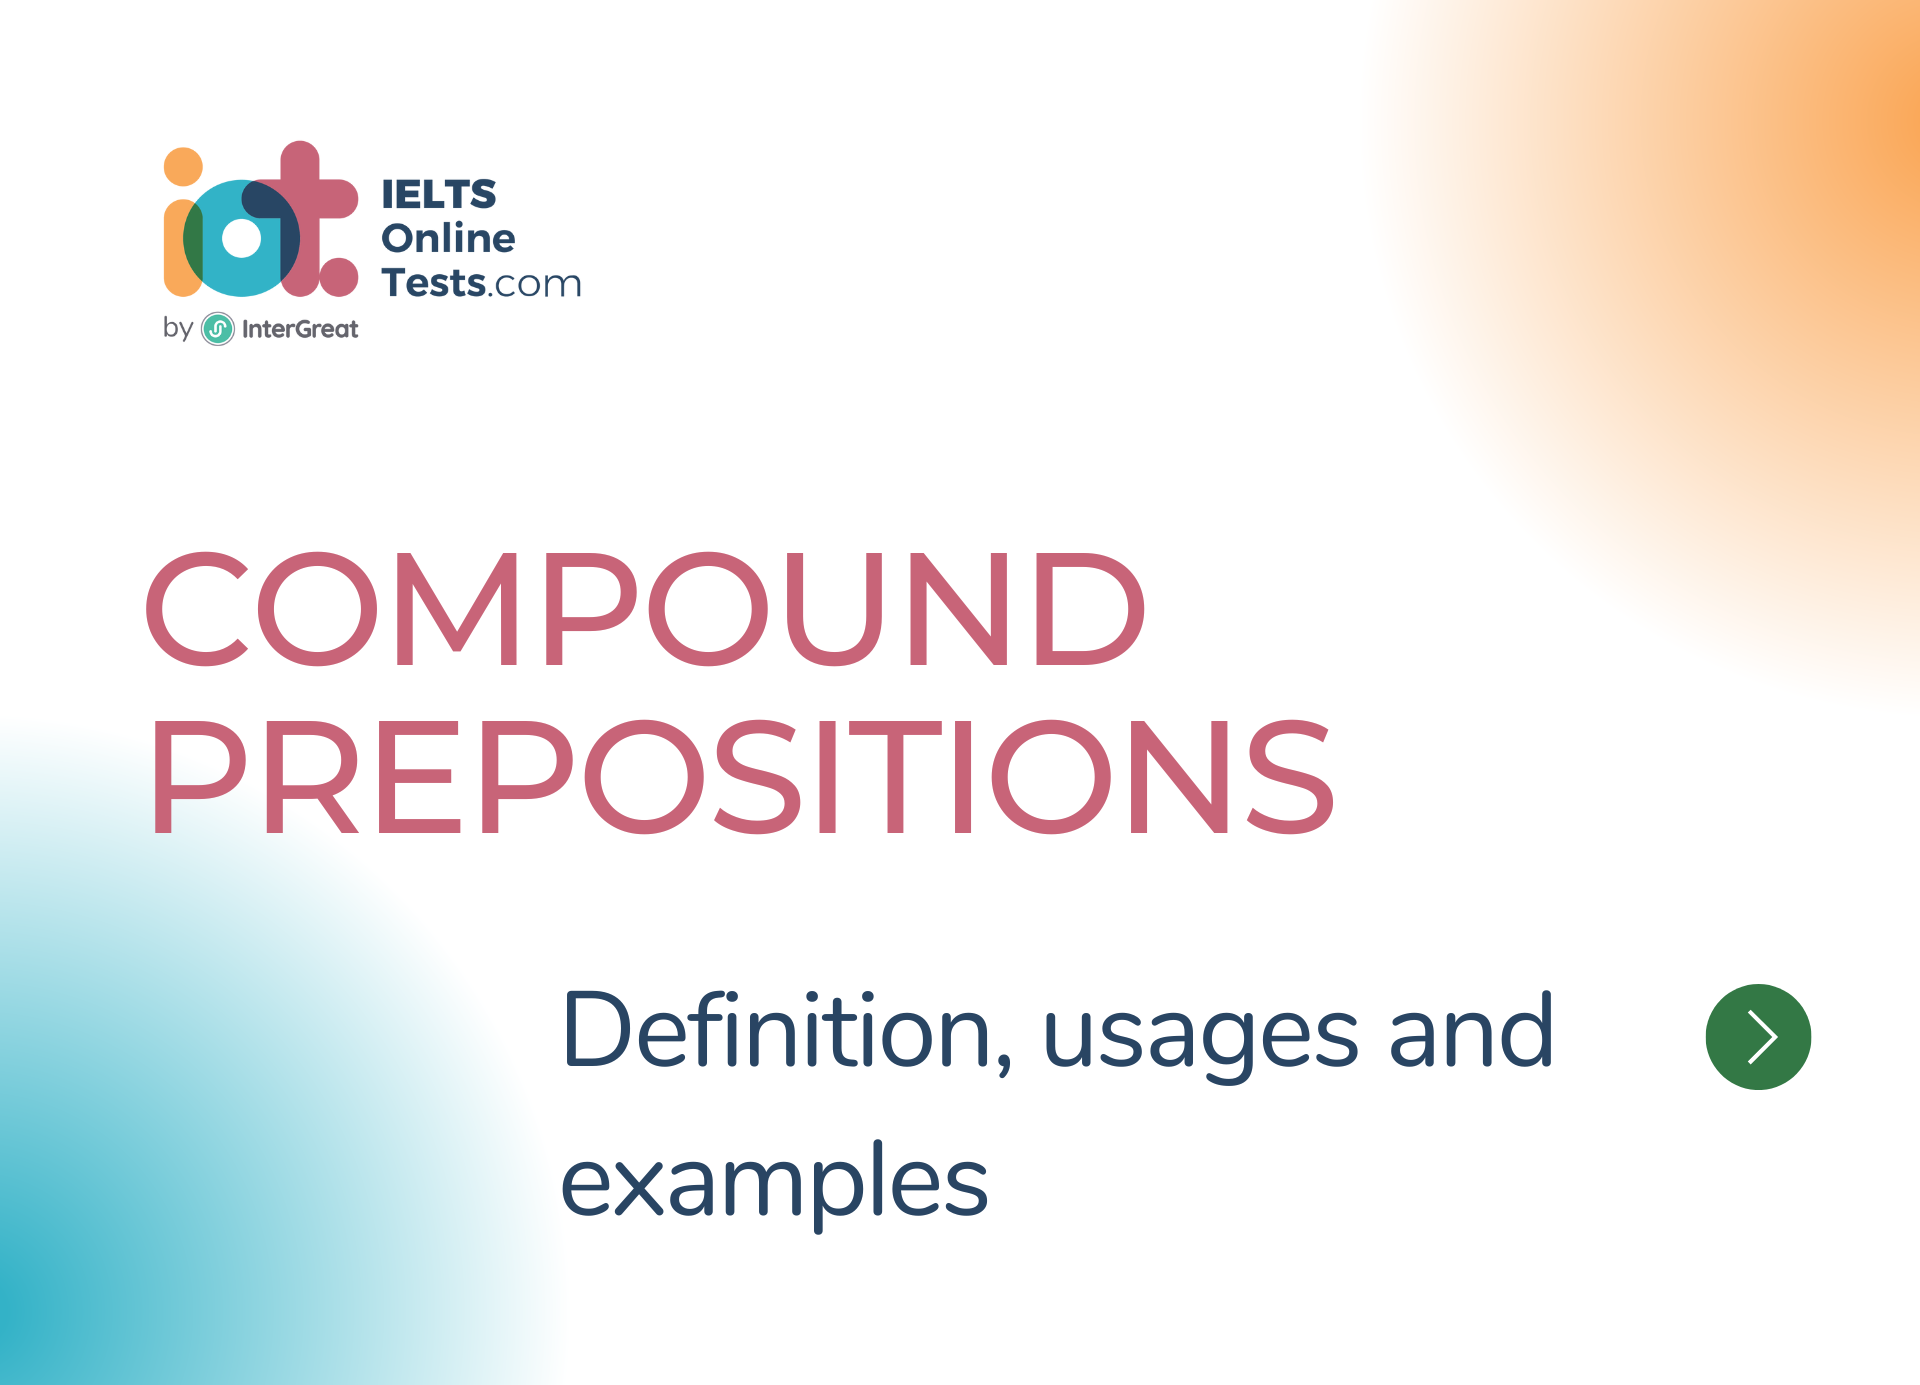 Giới từ kép (Compound prepositions) định nghĩa, cách sử dụng và ví dụ